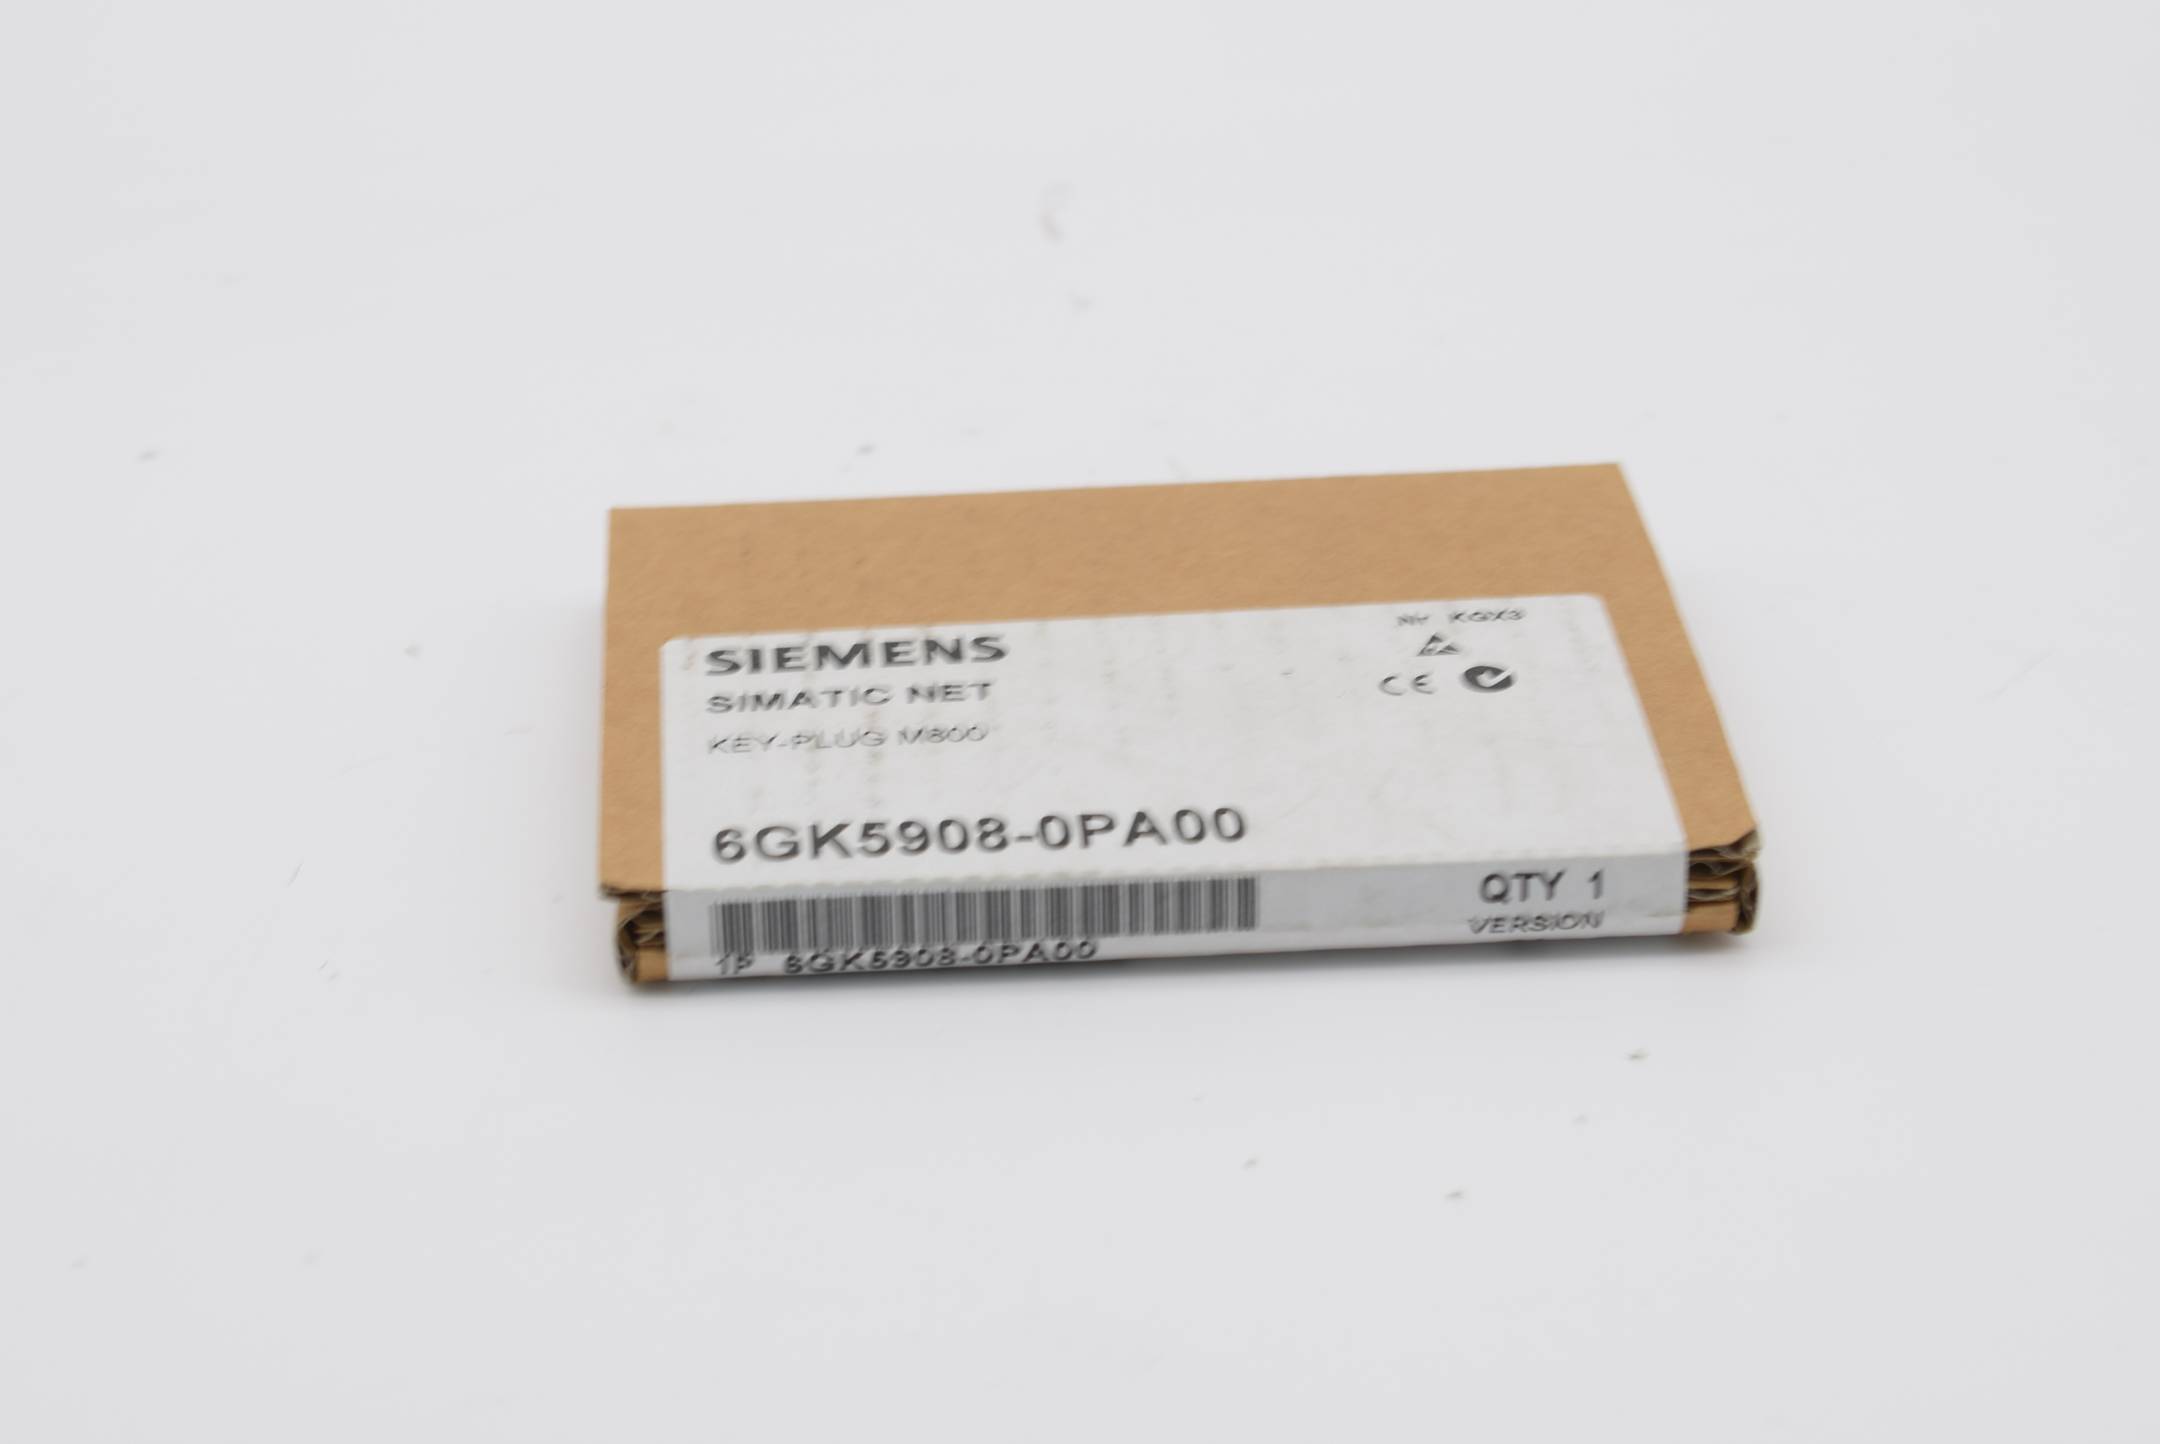 Siemens Simatic Net Key-Plug M800 6GK5908-0PA00 ( 6GK5 908-0PA00 ) Ver. 1